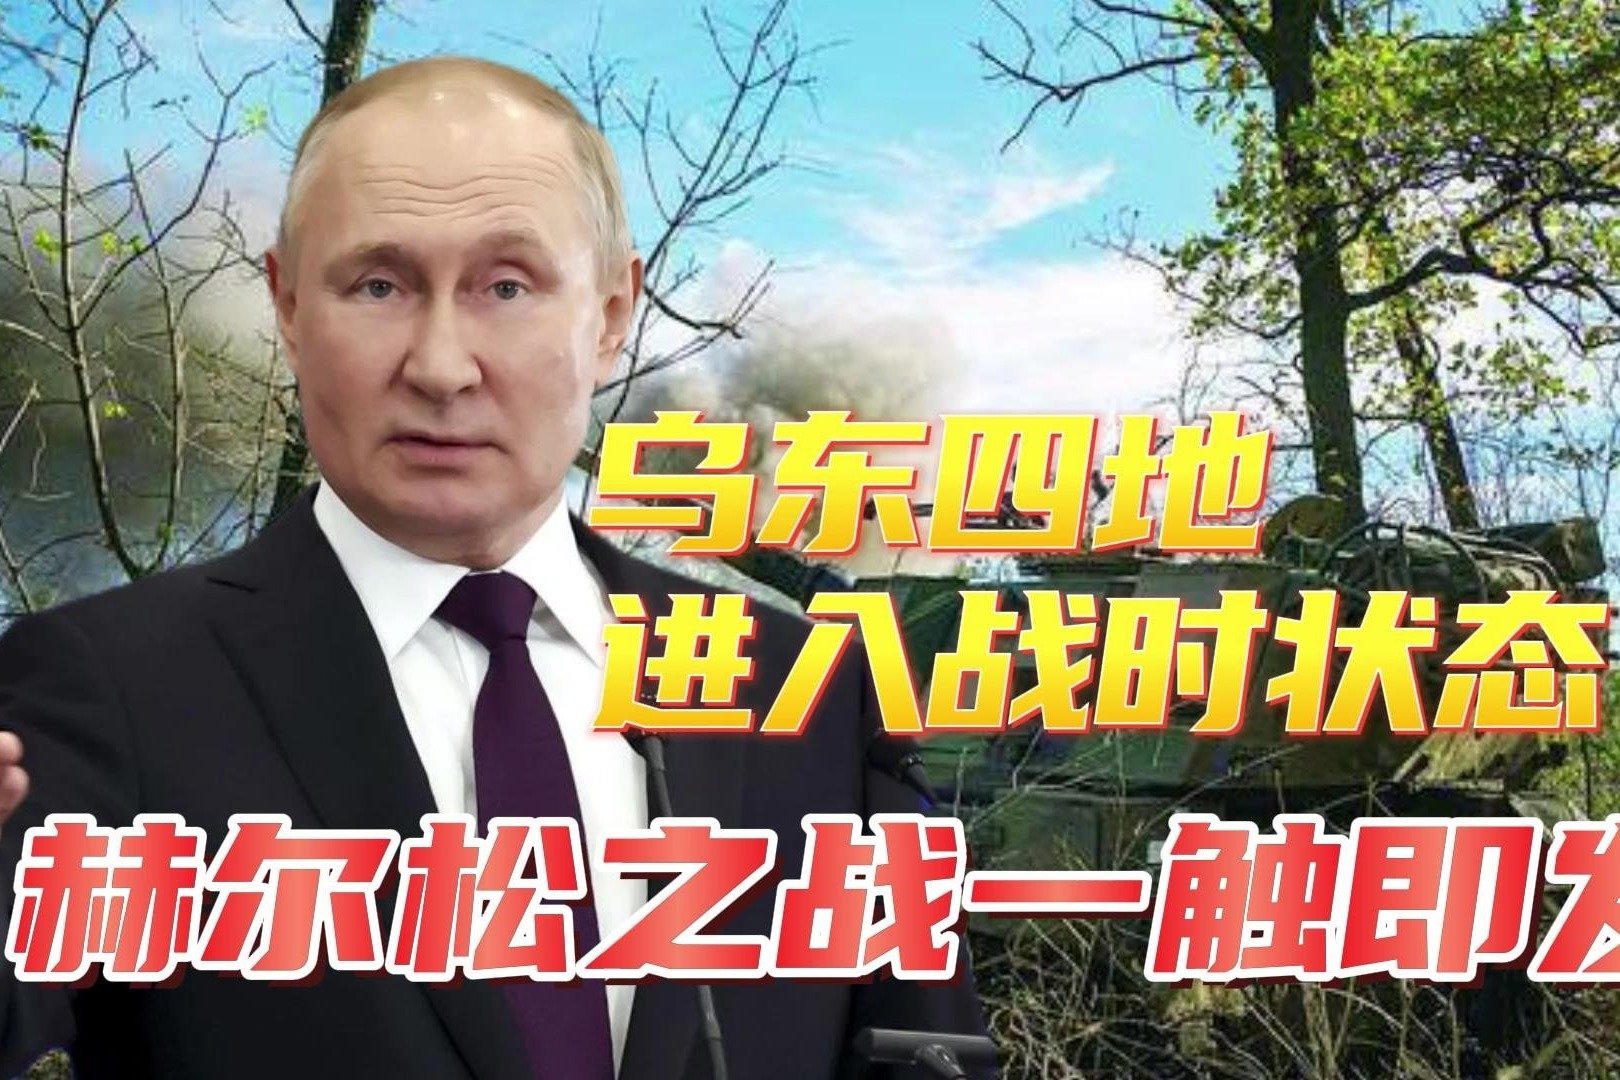 普京宣布参加2024年俄罗斯总统选举_凤凰网视频_凤凰网